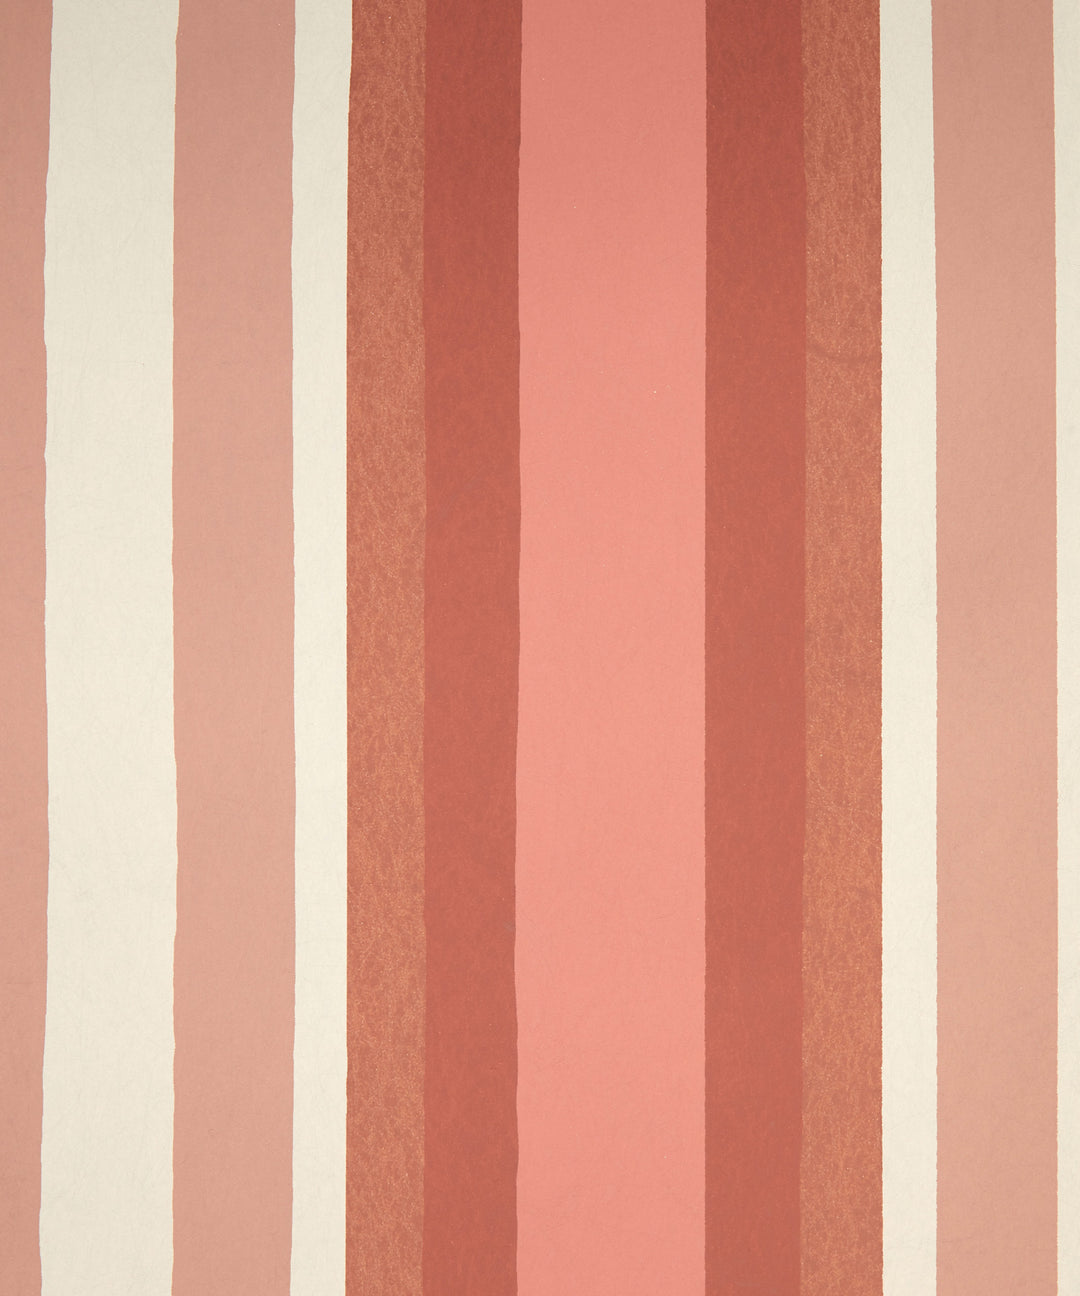 Liberty-botanical-atlas-obi-stripe-wallpaper-coral-lacquer-white-red